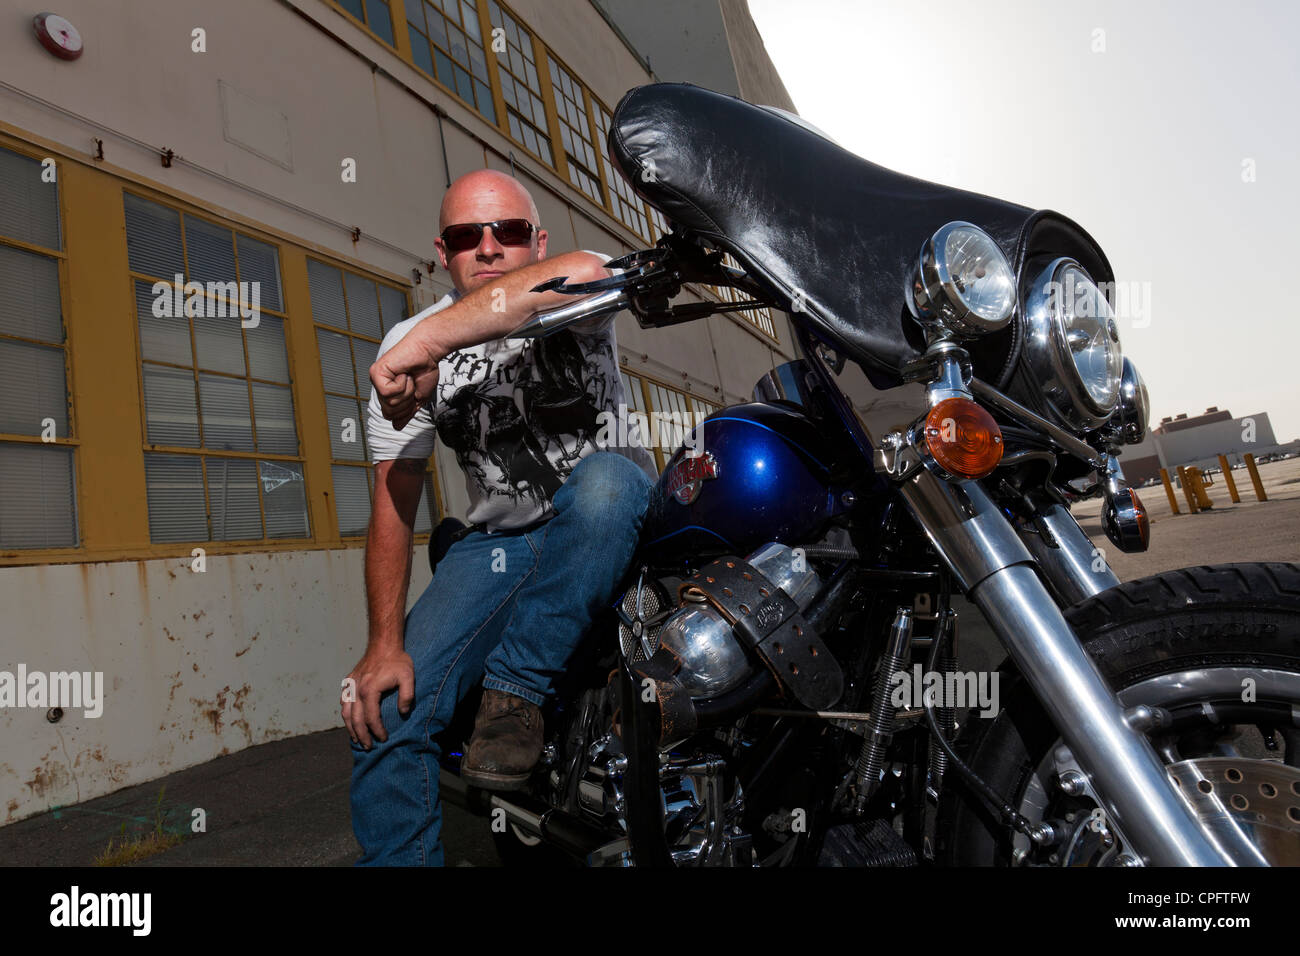 Una Harley Davidson motociclista seduto sulla sua moto Foto Stock